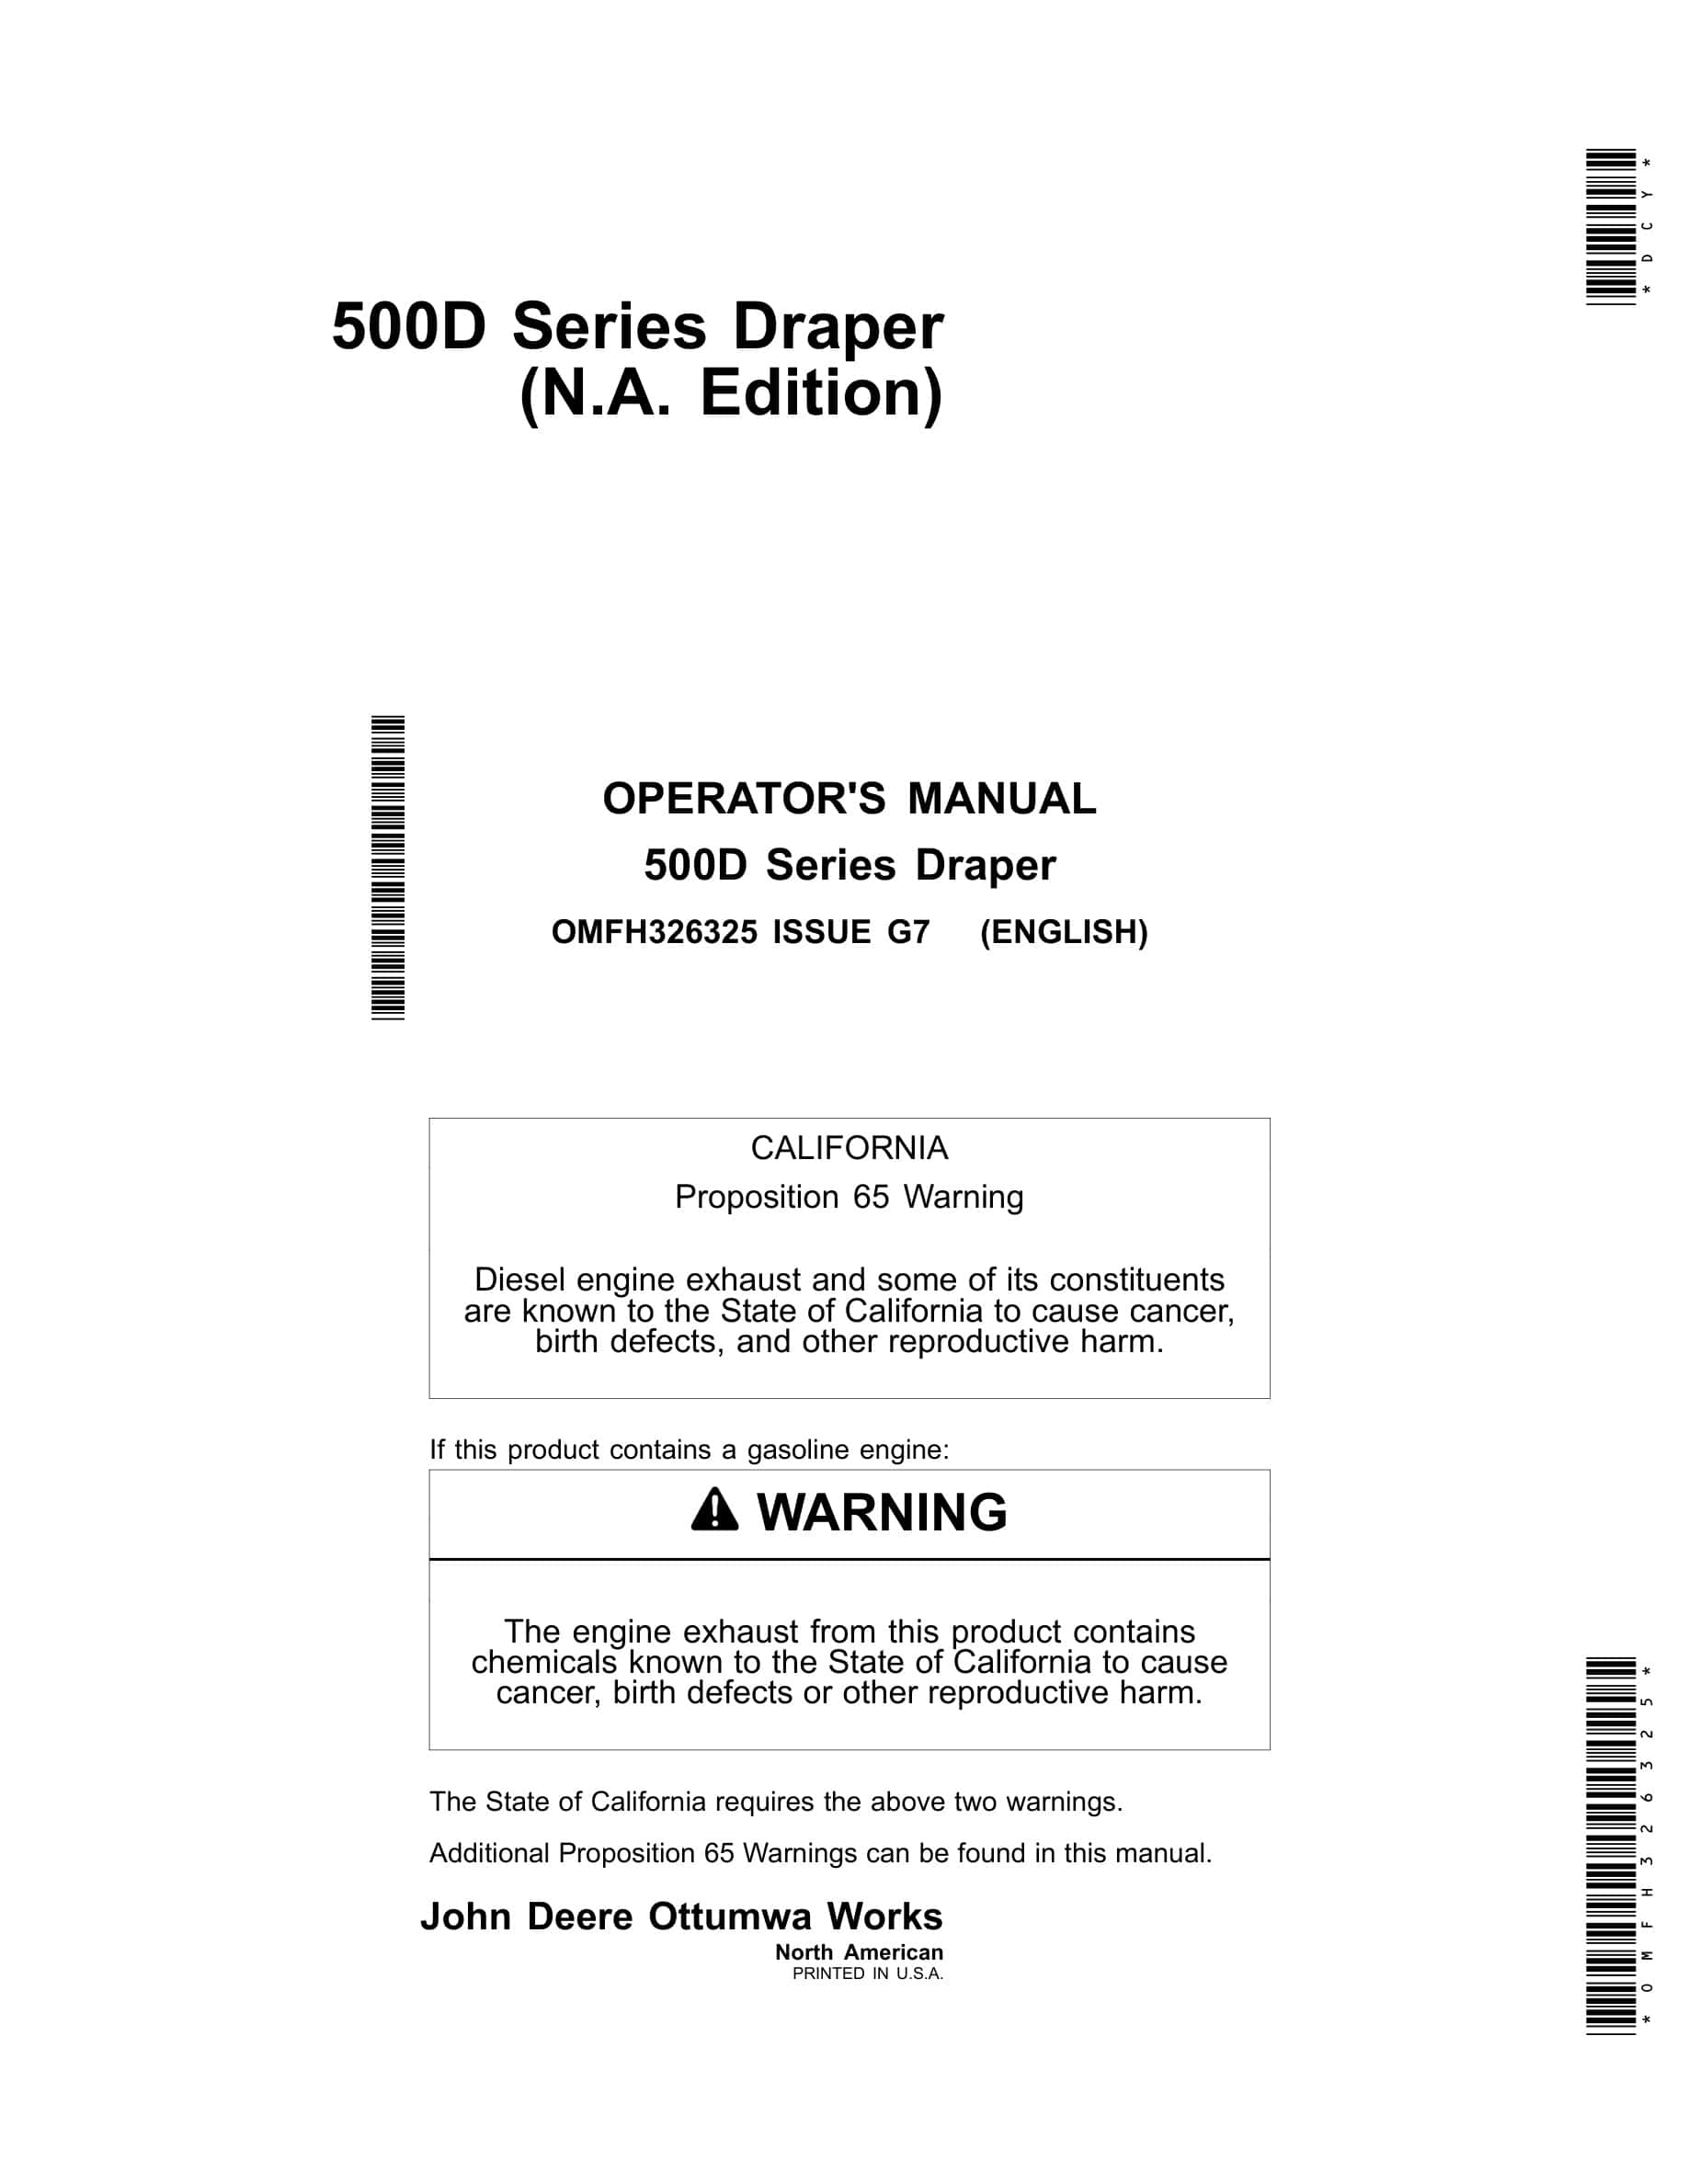 John Deere 500D Series Draper Operator Manual OMFH326325-1